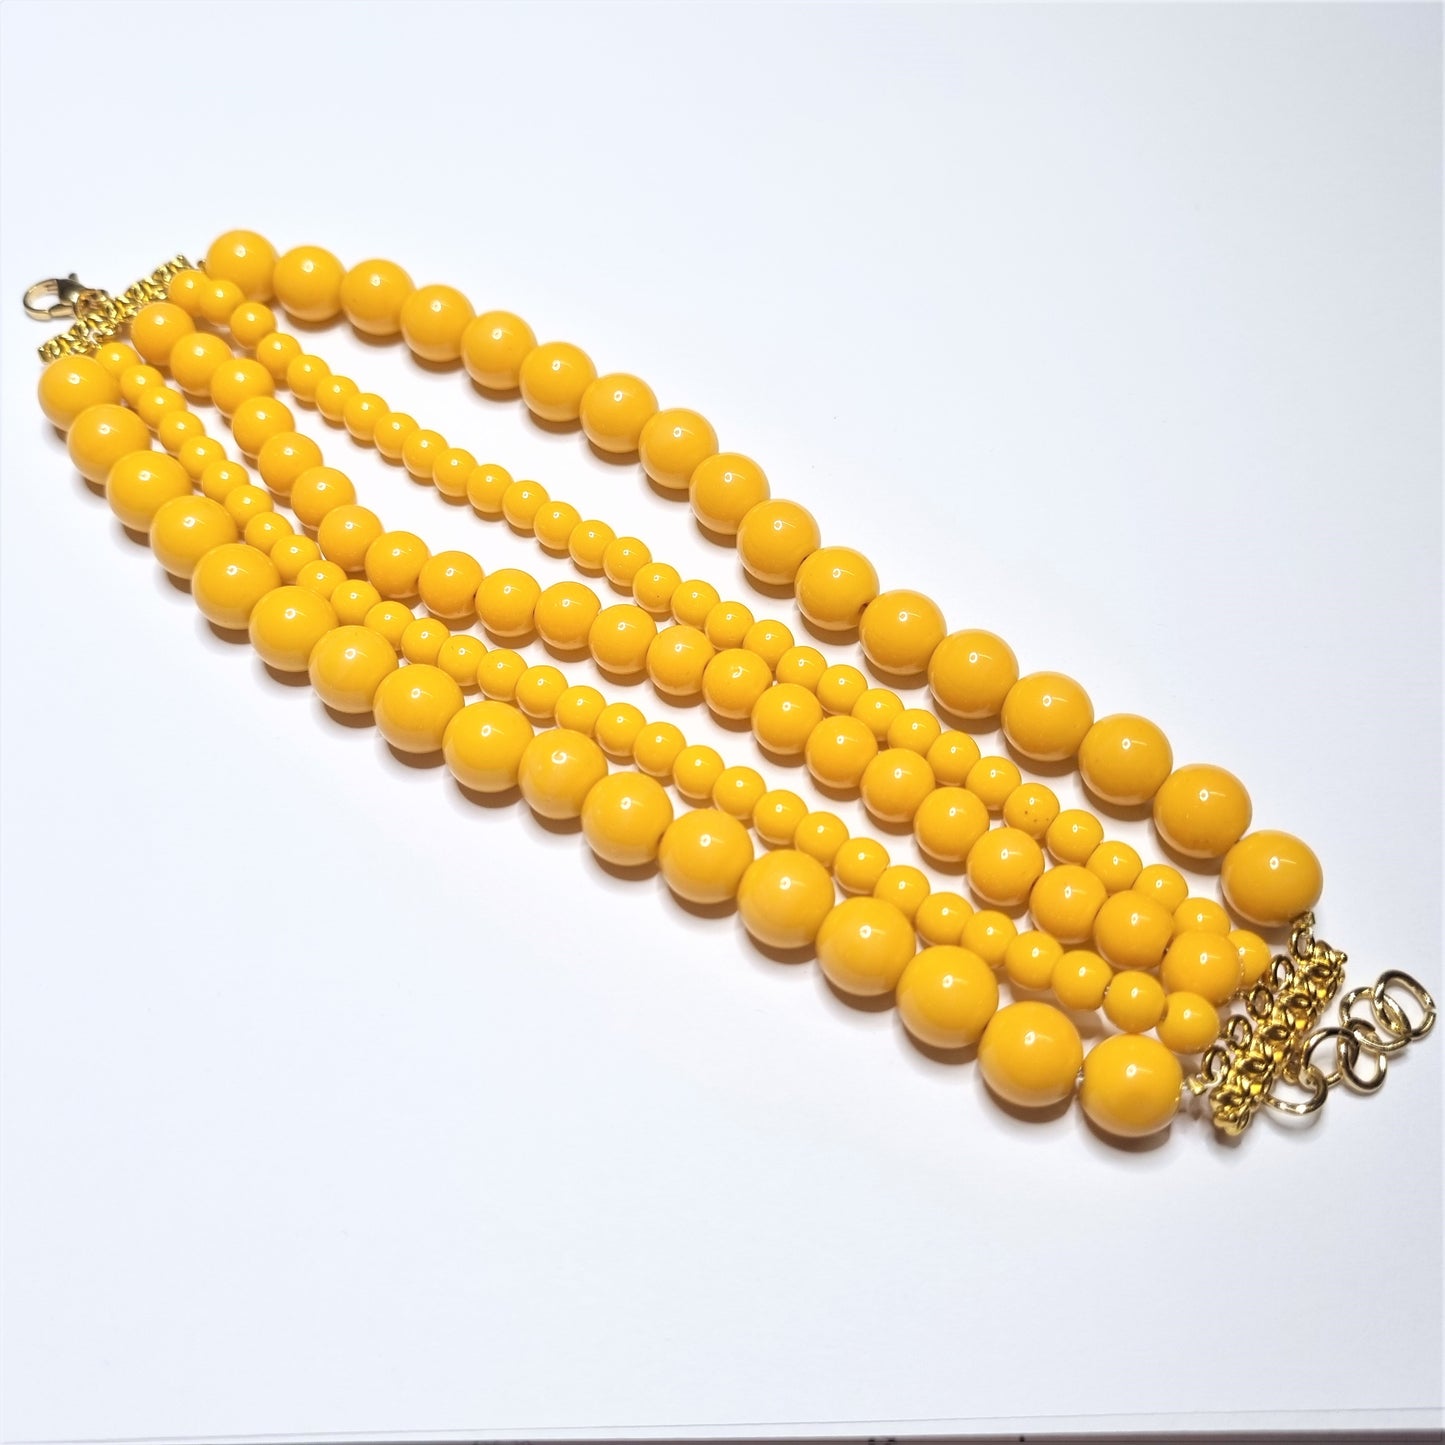 Bracciale LE PERLE .050  fascia di perle colore giallo e metallo dorato.